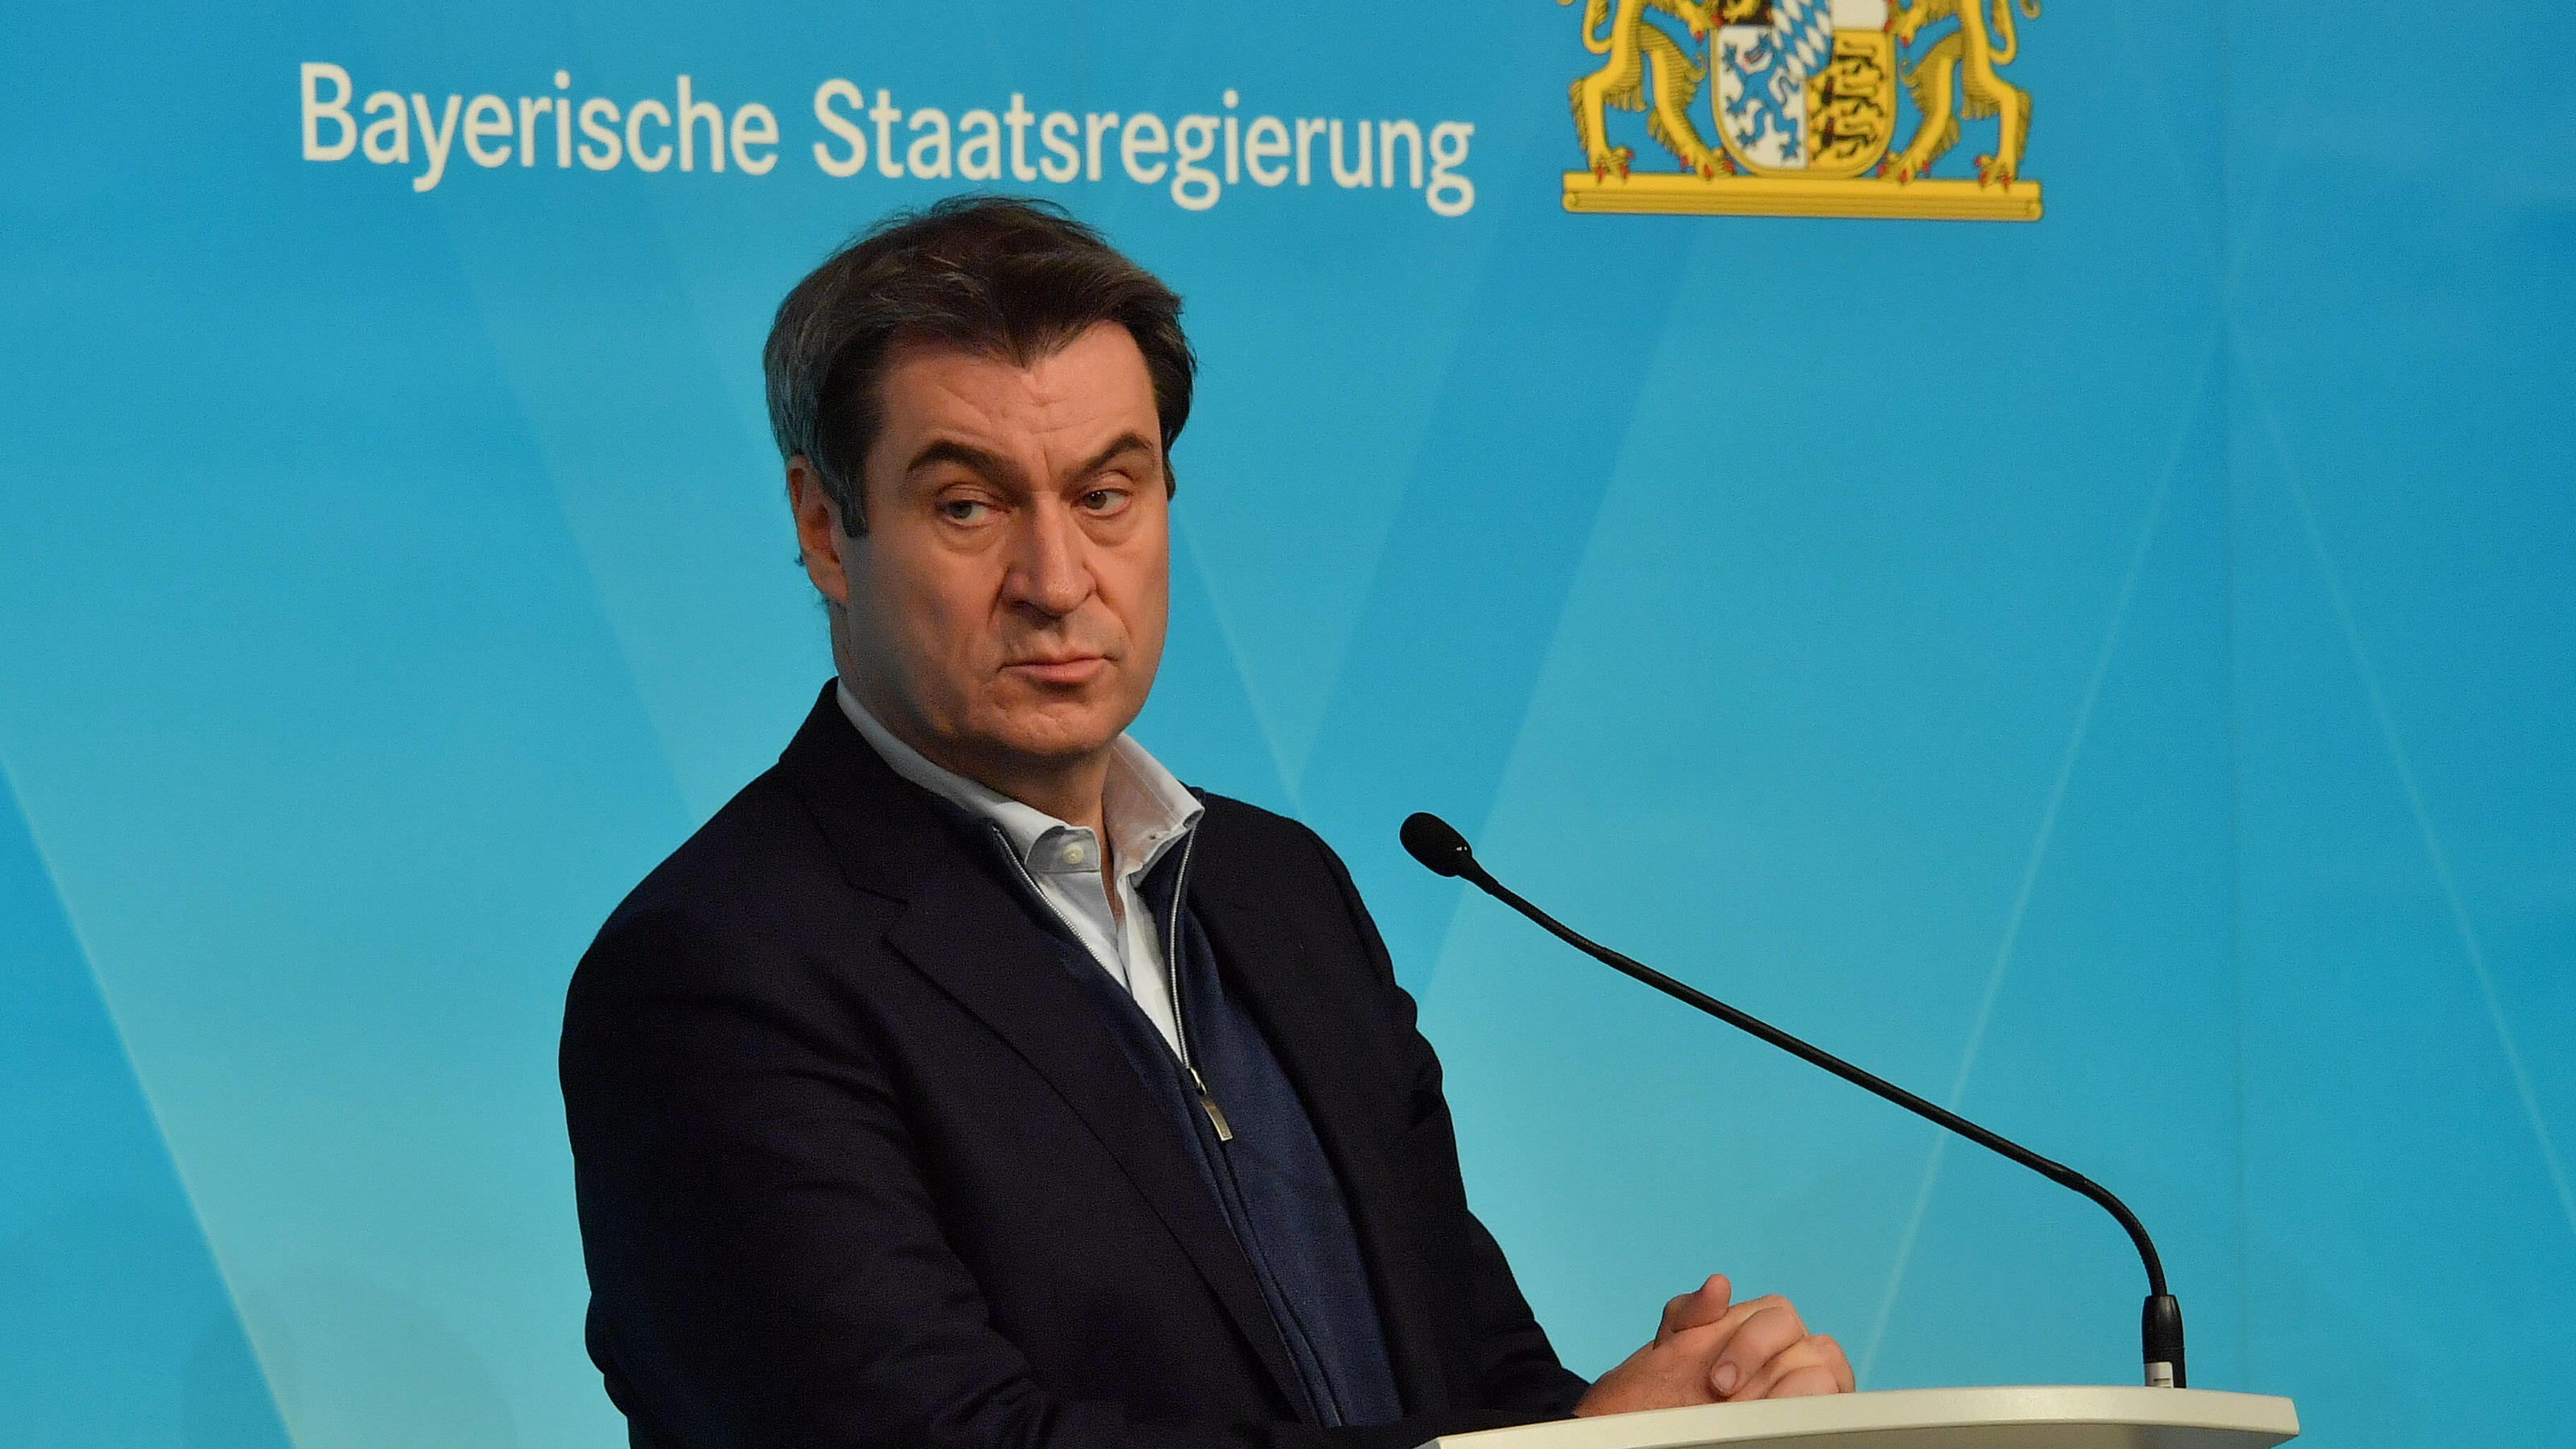  Dr. Markus Söder, Bayerischer Ministerpräsident 